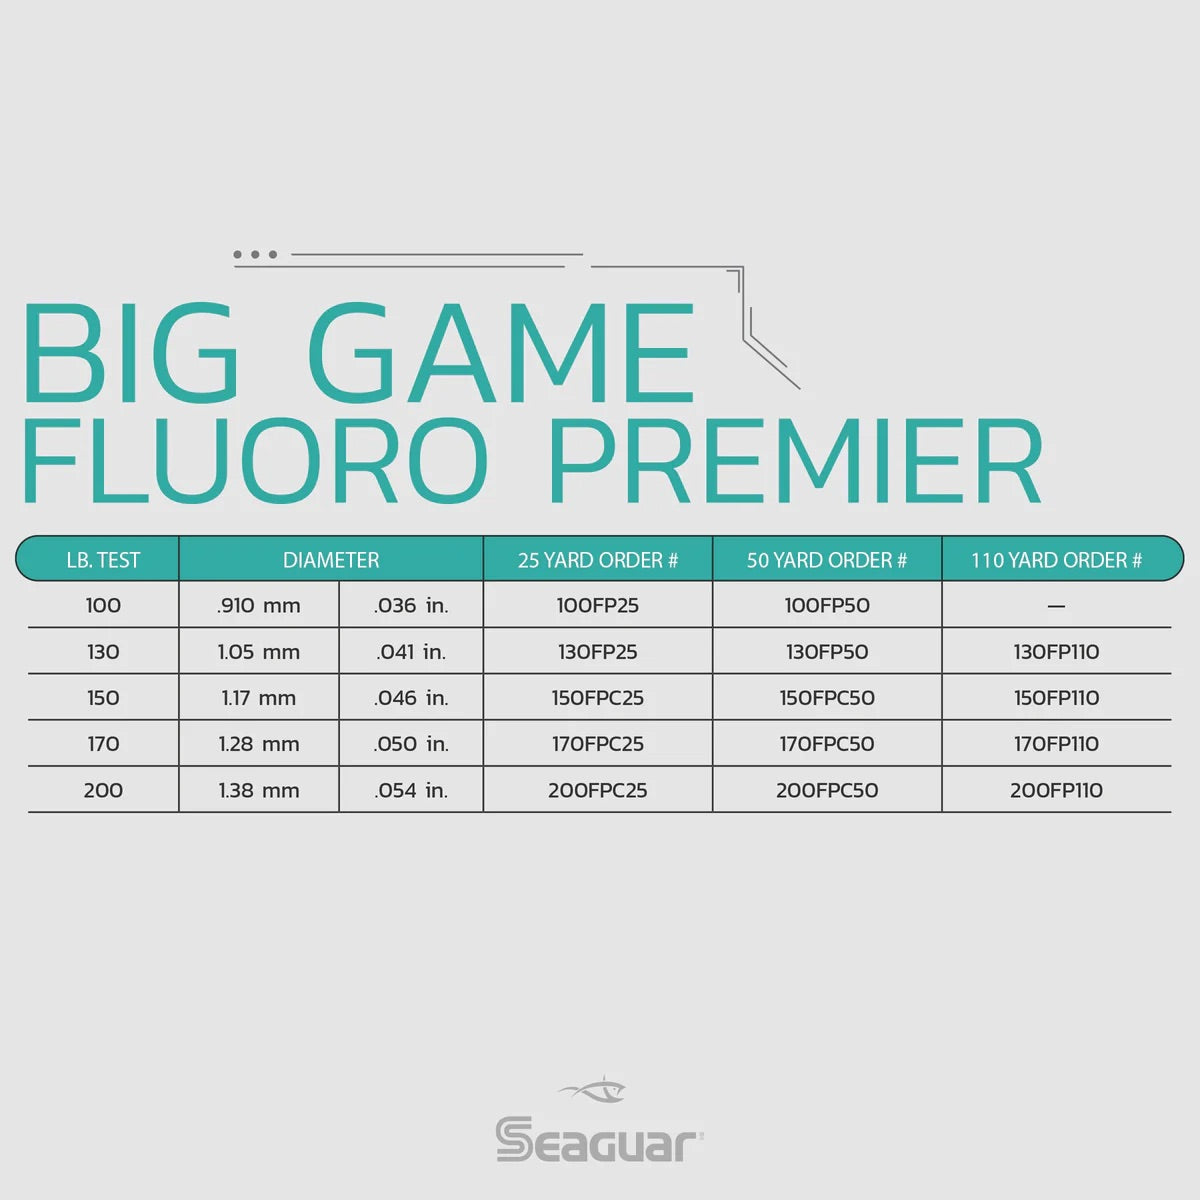 Seaguar - Big Game Premier IGFA Rated Fluorocarbon Leader - 25yd Coils